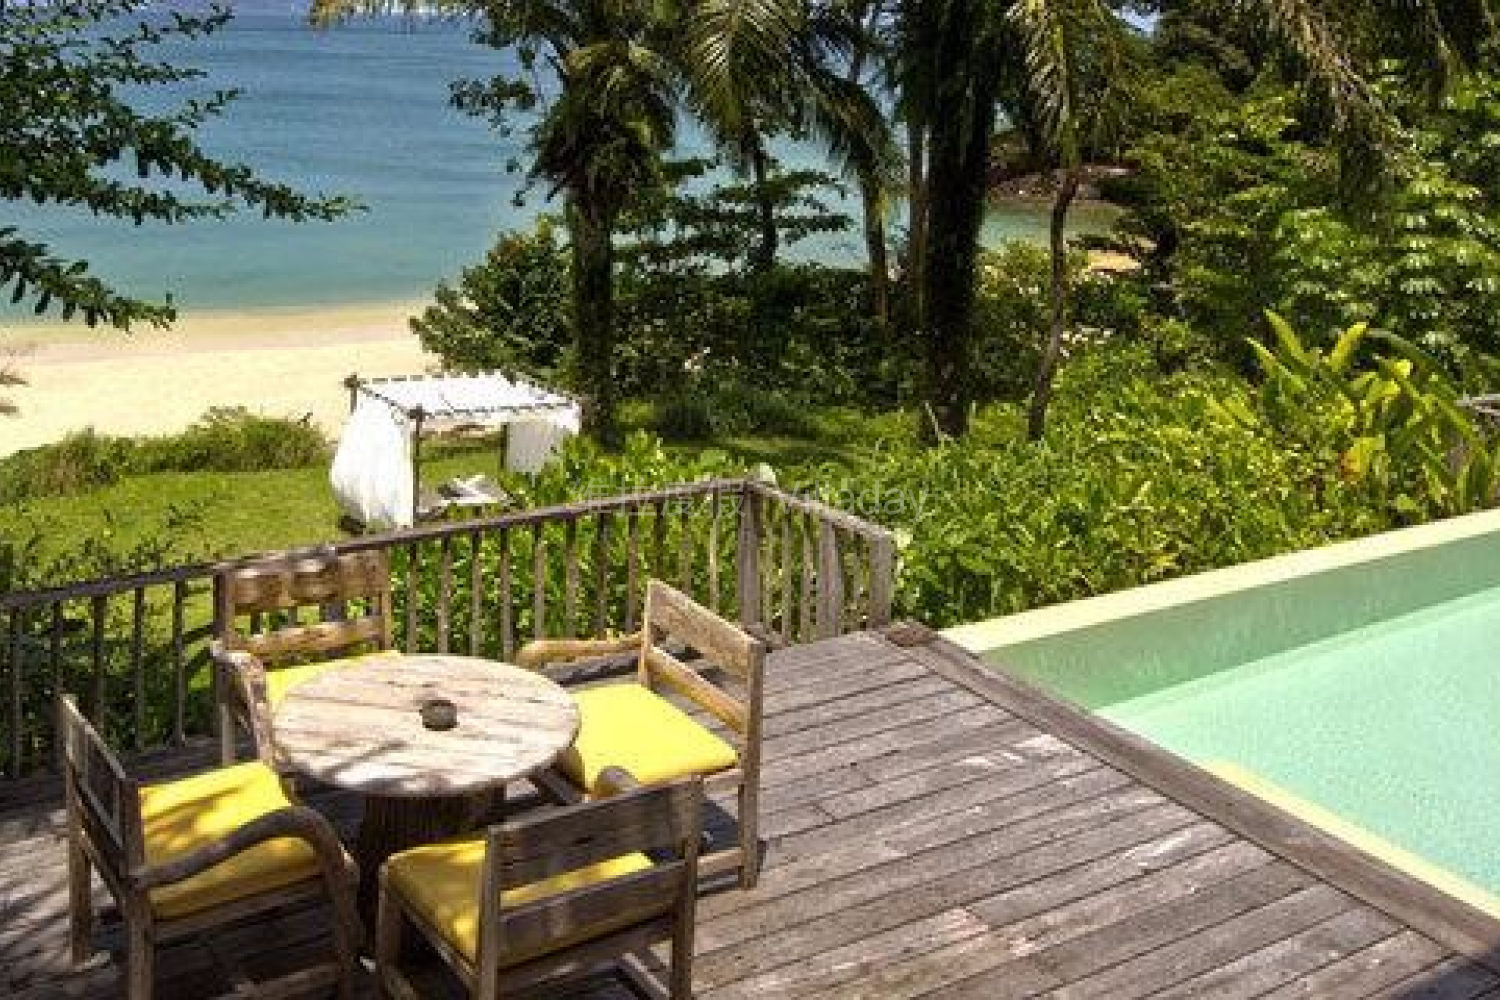 泰国普吉岛芭东海滩10卧高端海景度假别墅